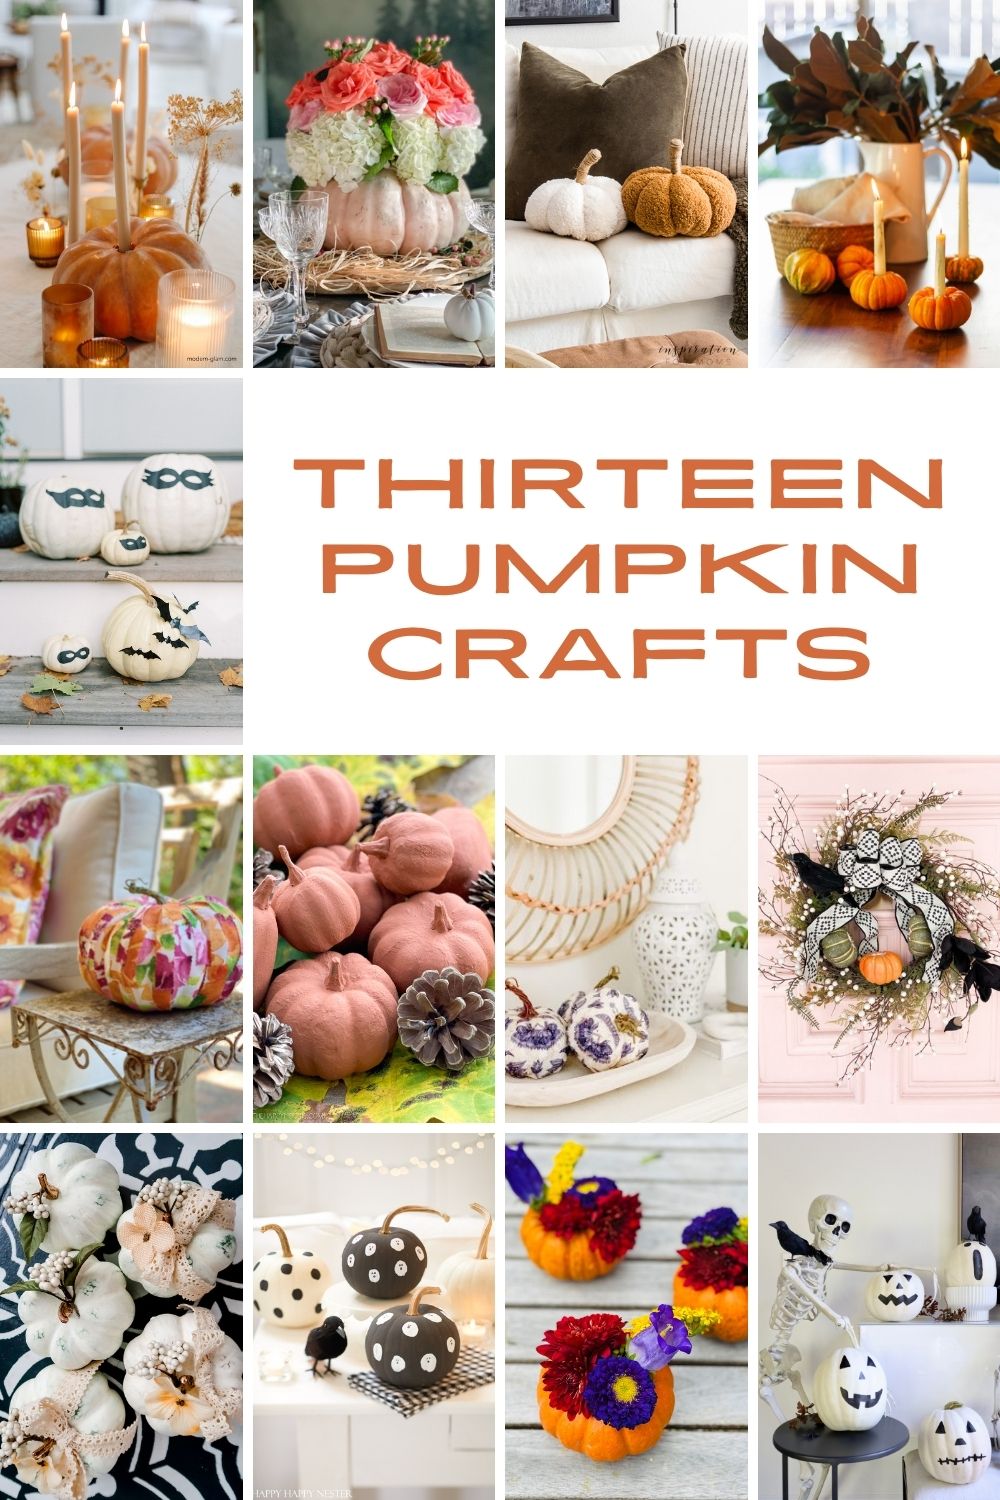 Thirteen Pumpkin Crafts poster.